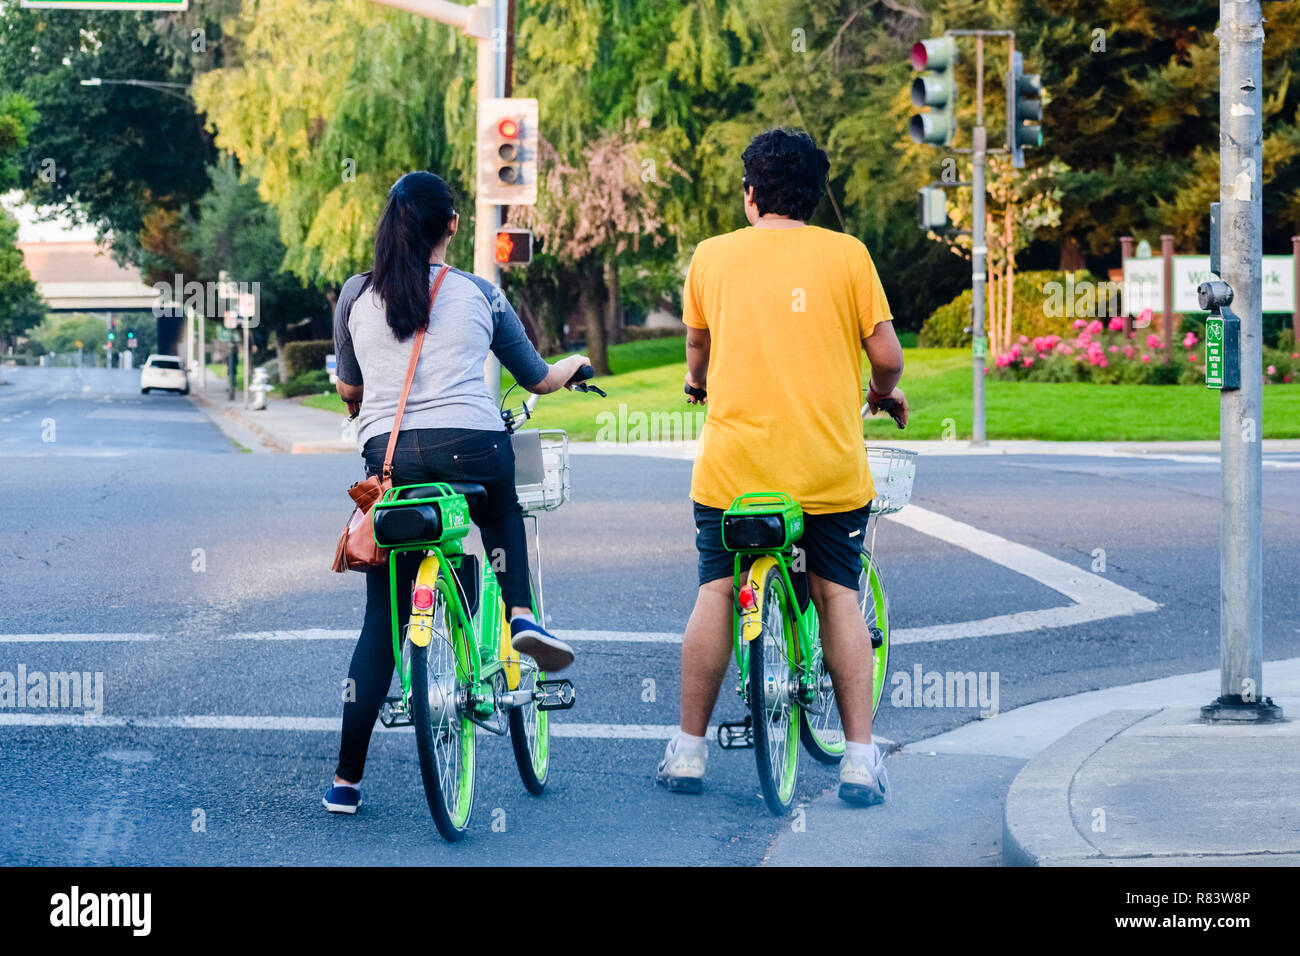 September 3, 2018 Mountain View/CA/USA - Paar reiten Kalk Fahrräder und wartet darauf, dass die Ampel auf Grün zu schalten; Kalk ist eine US-amerikanische Transport Stockfoto